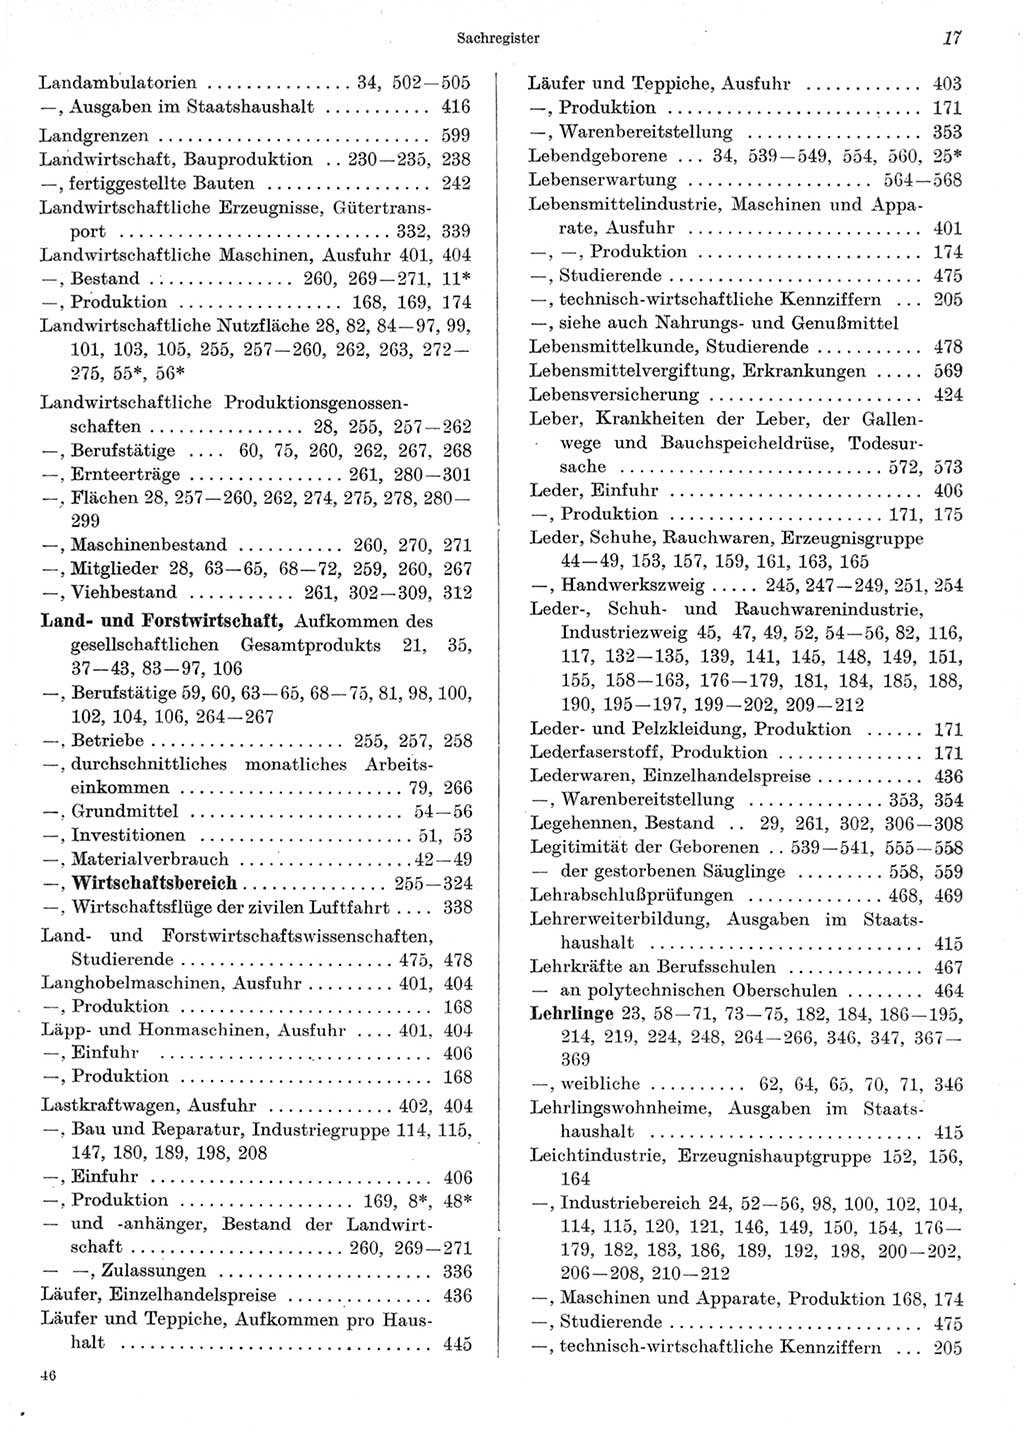 Statistisches Jahrbuch der Deutschen Demokratischen Republik (DDR) 1967, Seite 17 (Stat. Jb. DDR 1967, S. 17)